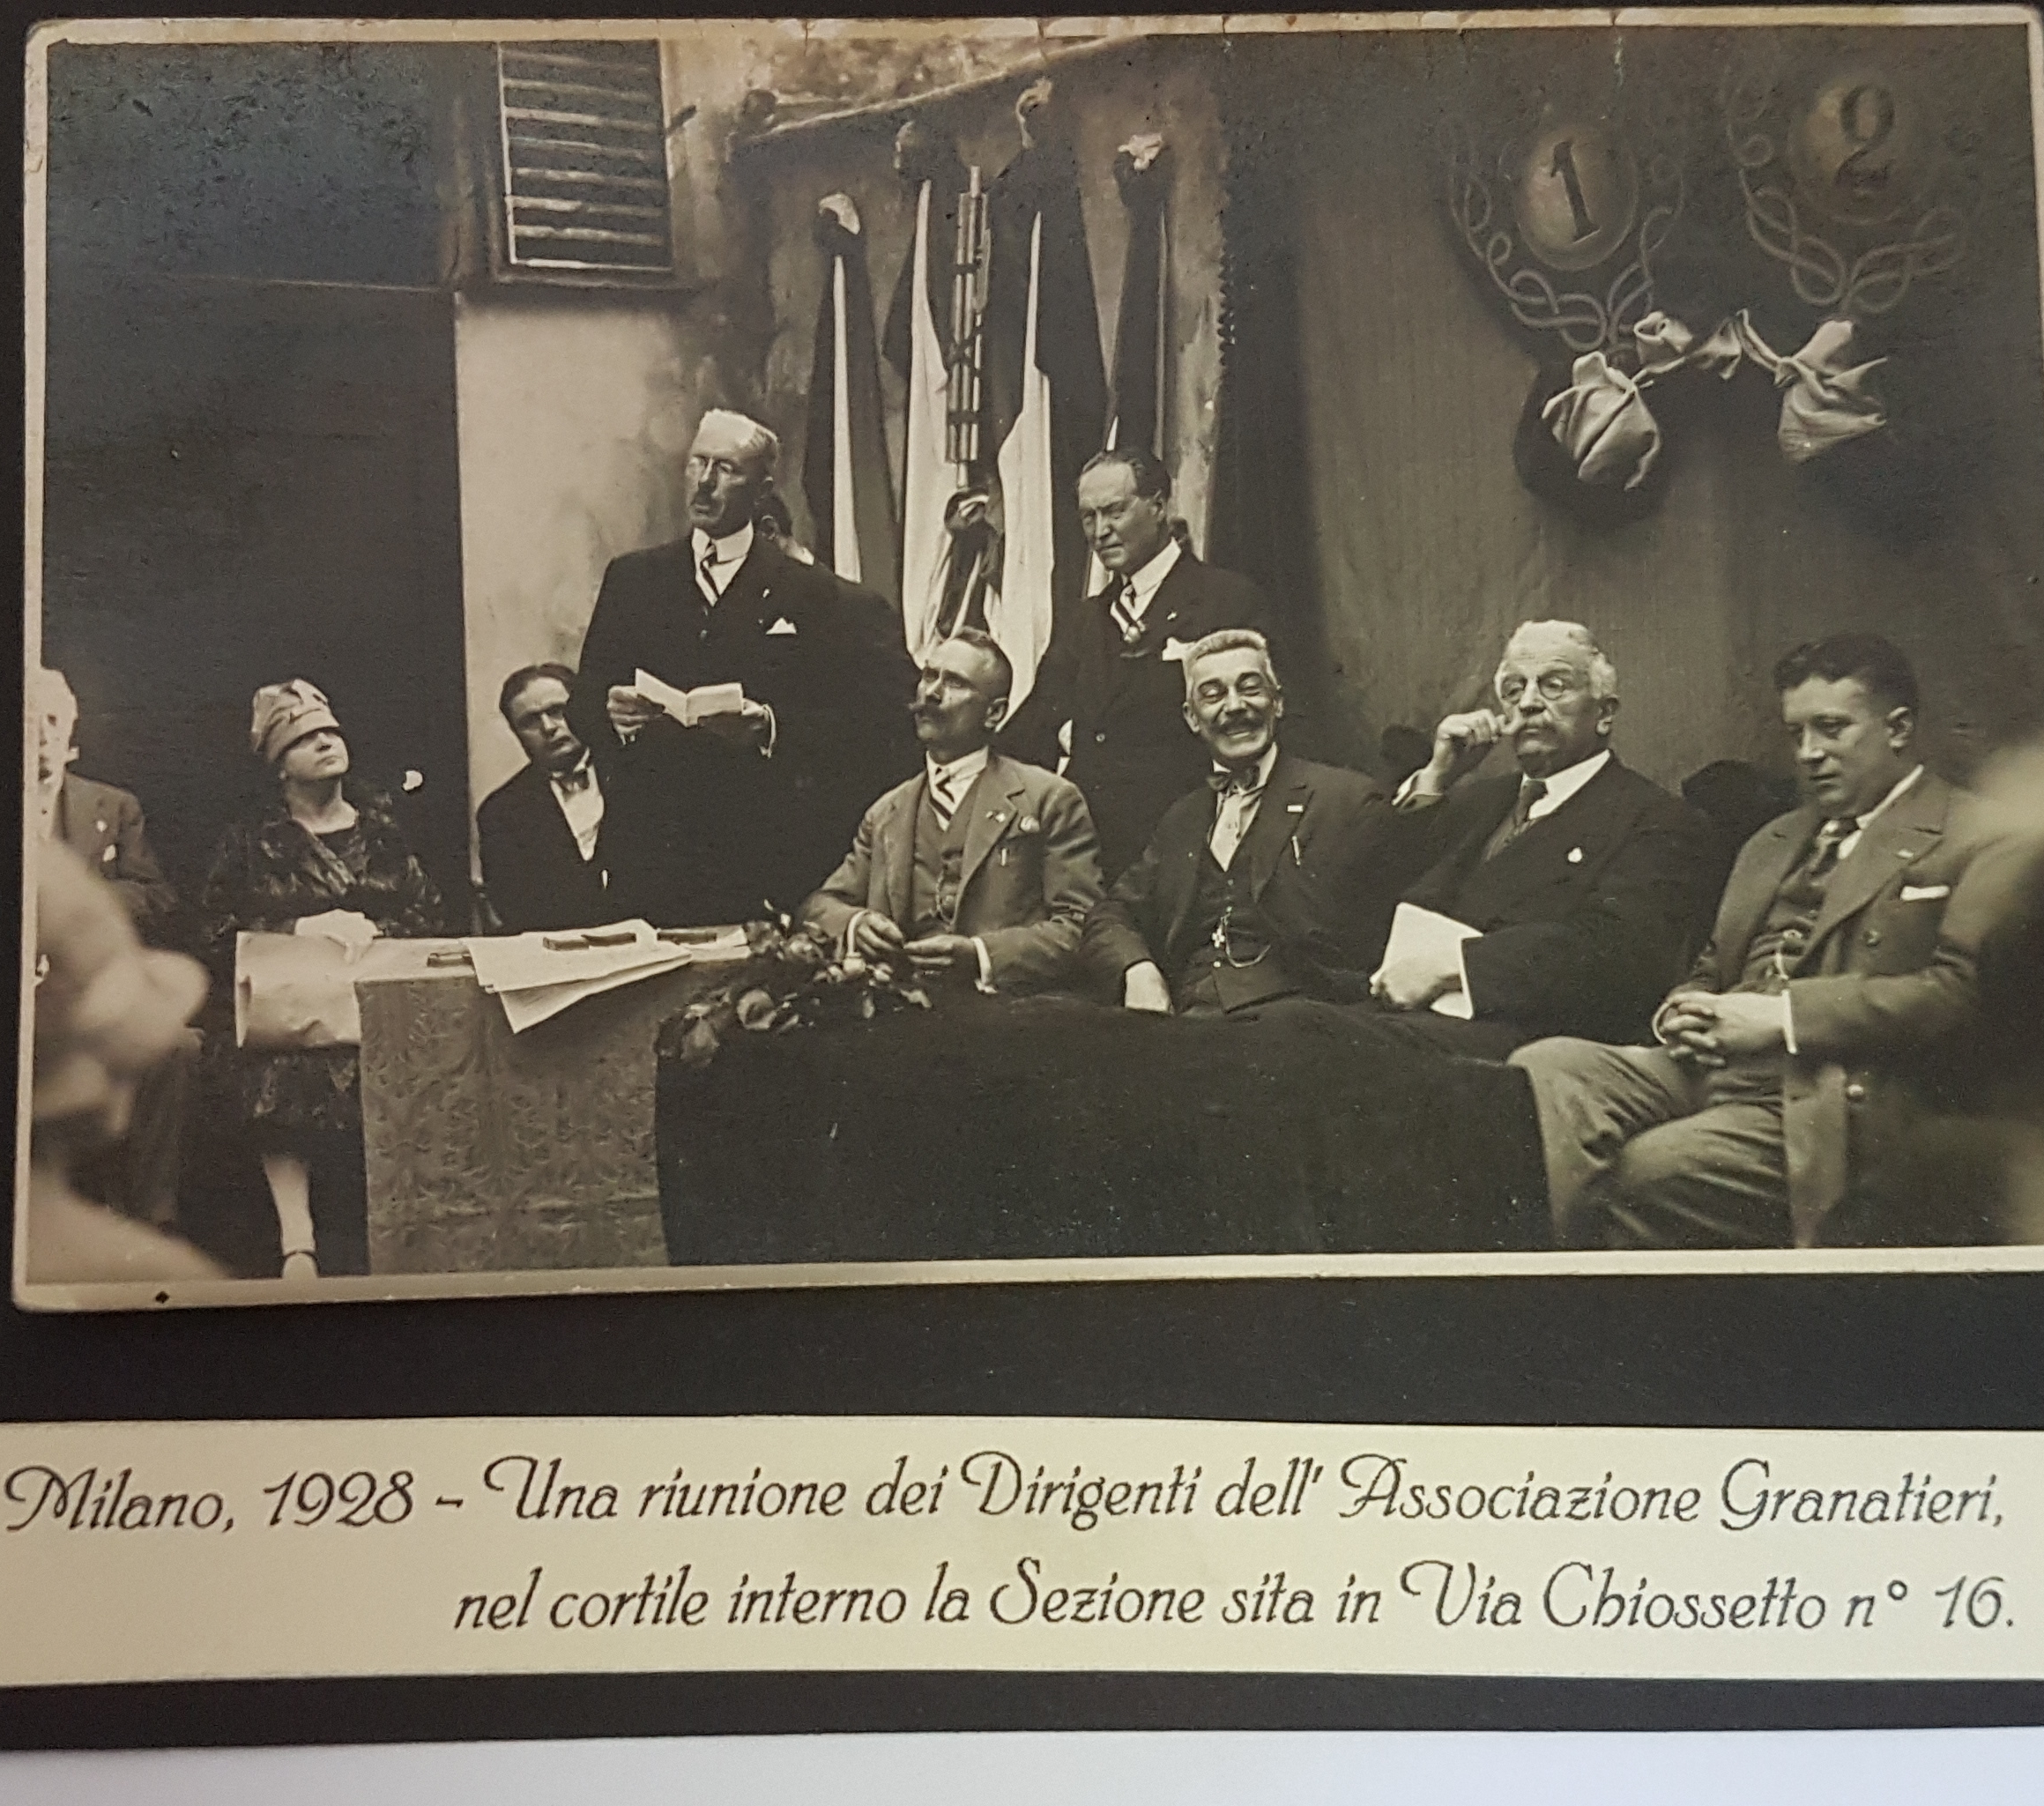 1928 - riunione dirigenti Associazione in Milano